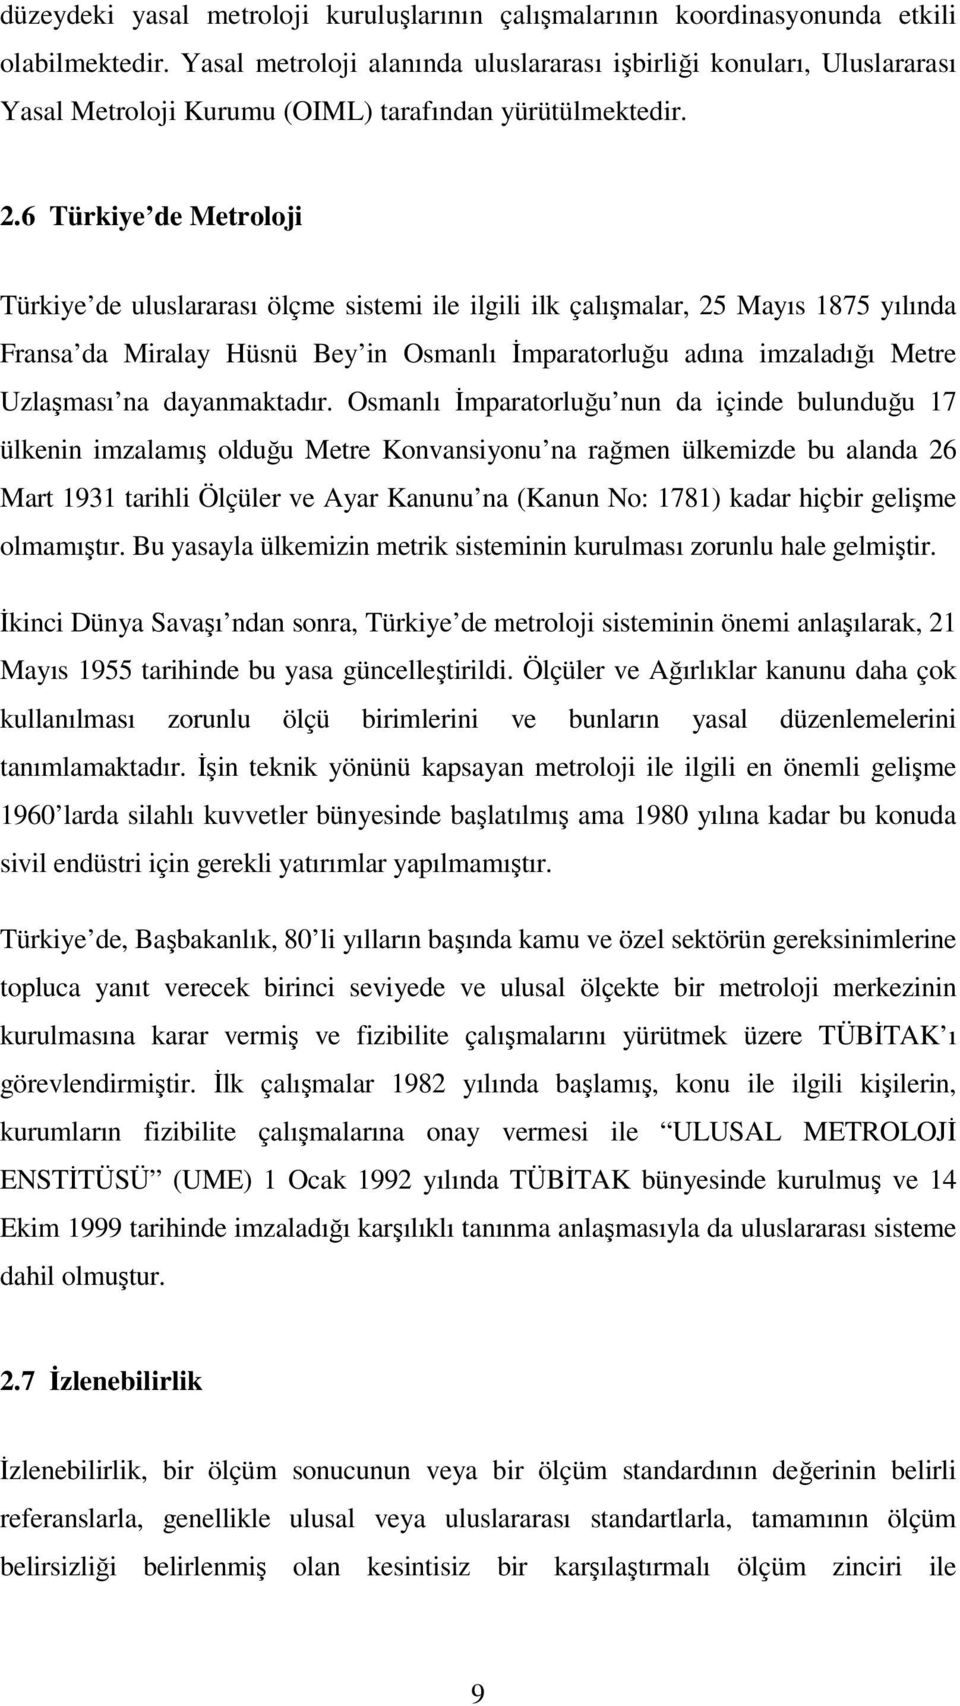 6 Türkiye de Metroloji Türkiye de uluslararası ölçme sistemi ile ilgili ilk çalışmalar, 25 Mayıs 1875 yılında Fransa da Miralay Hüsnü Bey in Osmanlı İmparatorluğu adına imzaladığı Metre Uzlaşması na